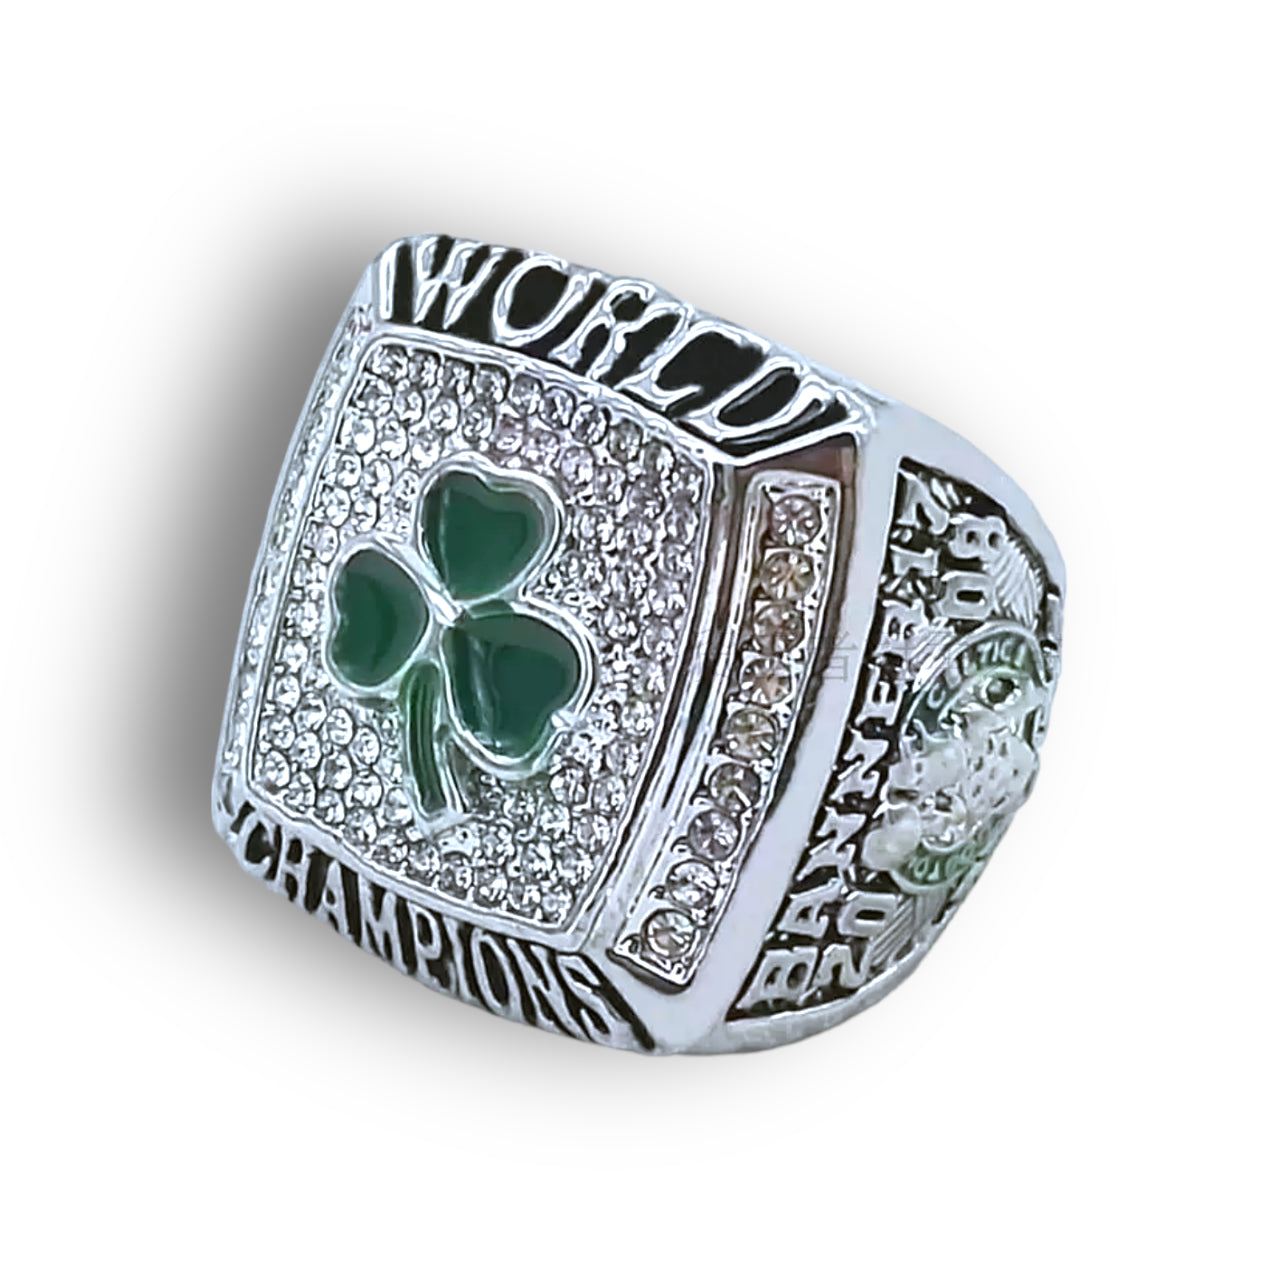 Boston Celtics 2008 World Champions Ring Handcrafted (Kevin Garnett)